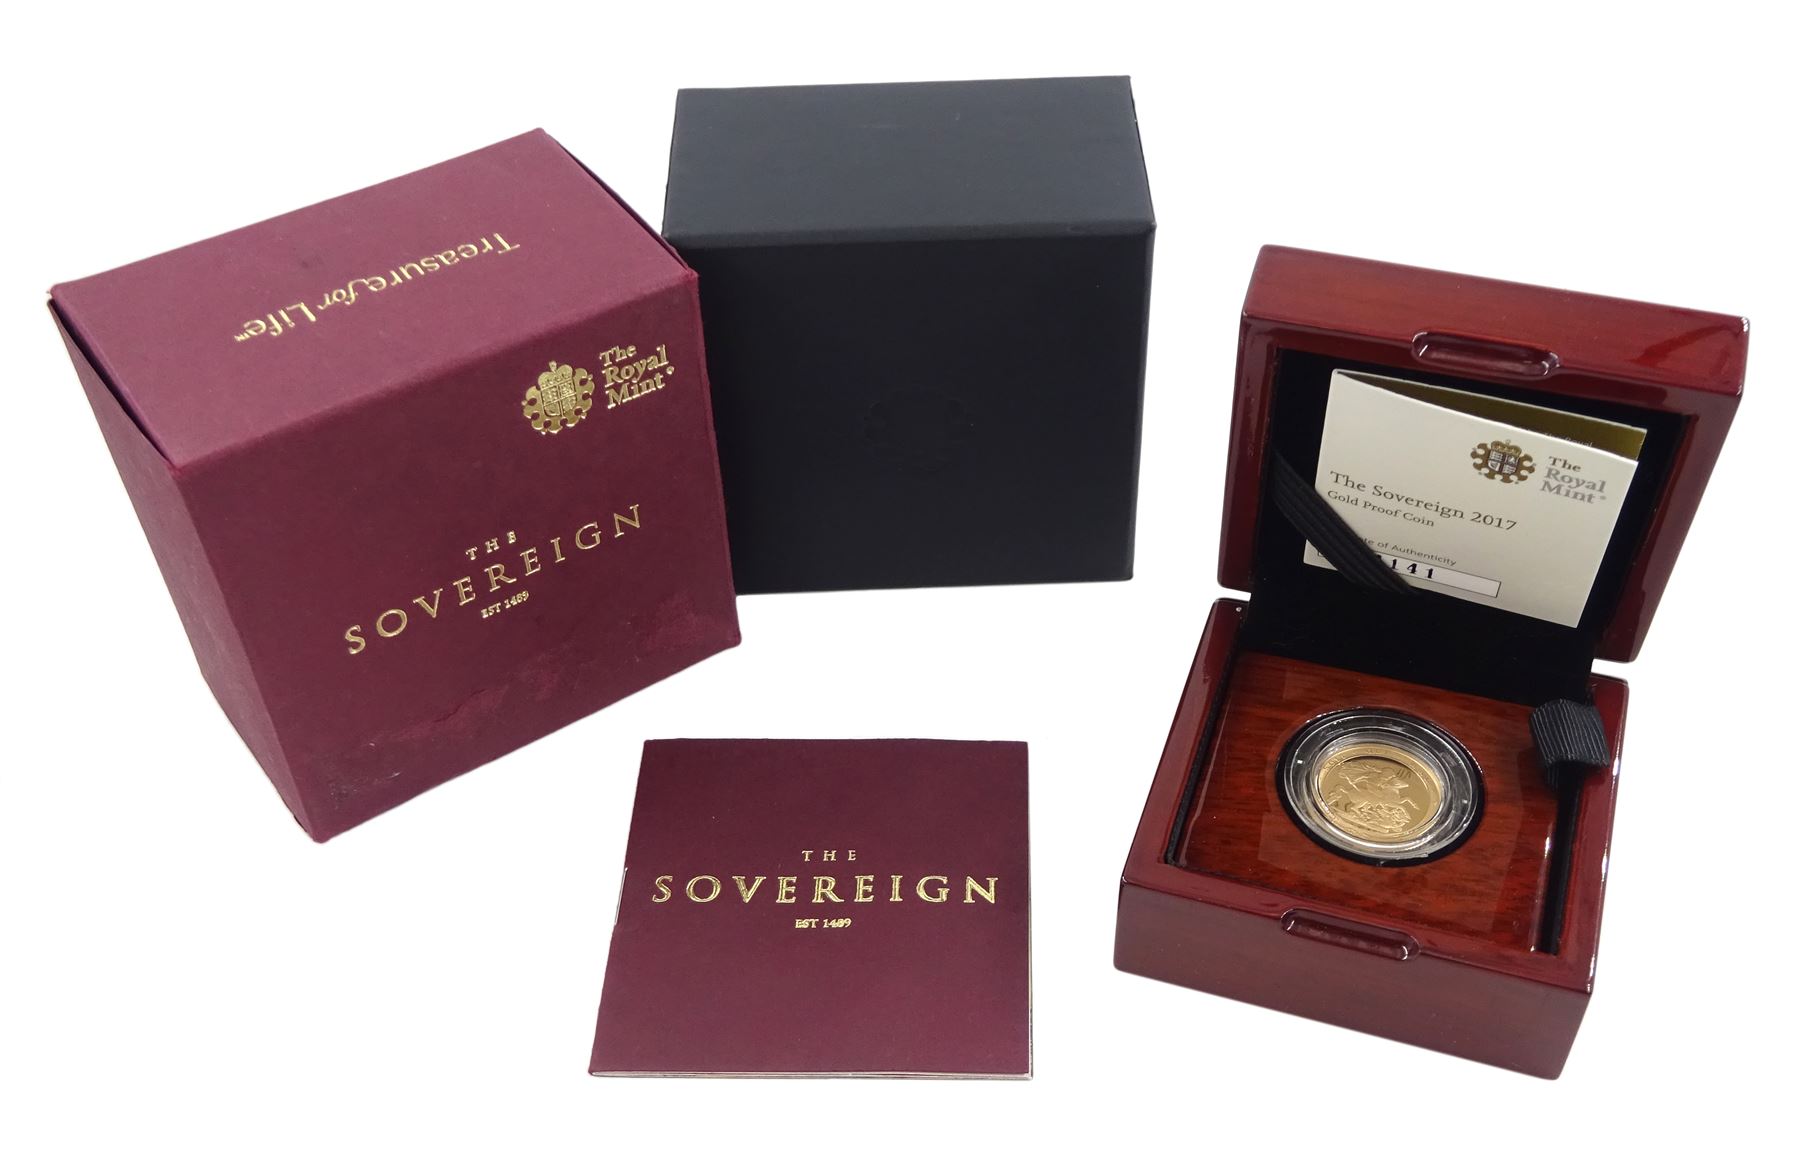 Queen Elizabeth II 2017 gold proof sovereign coin